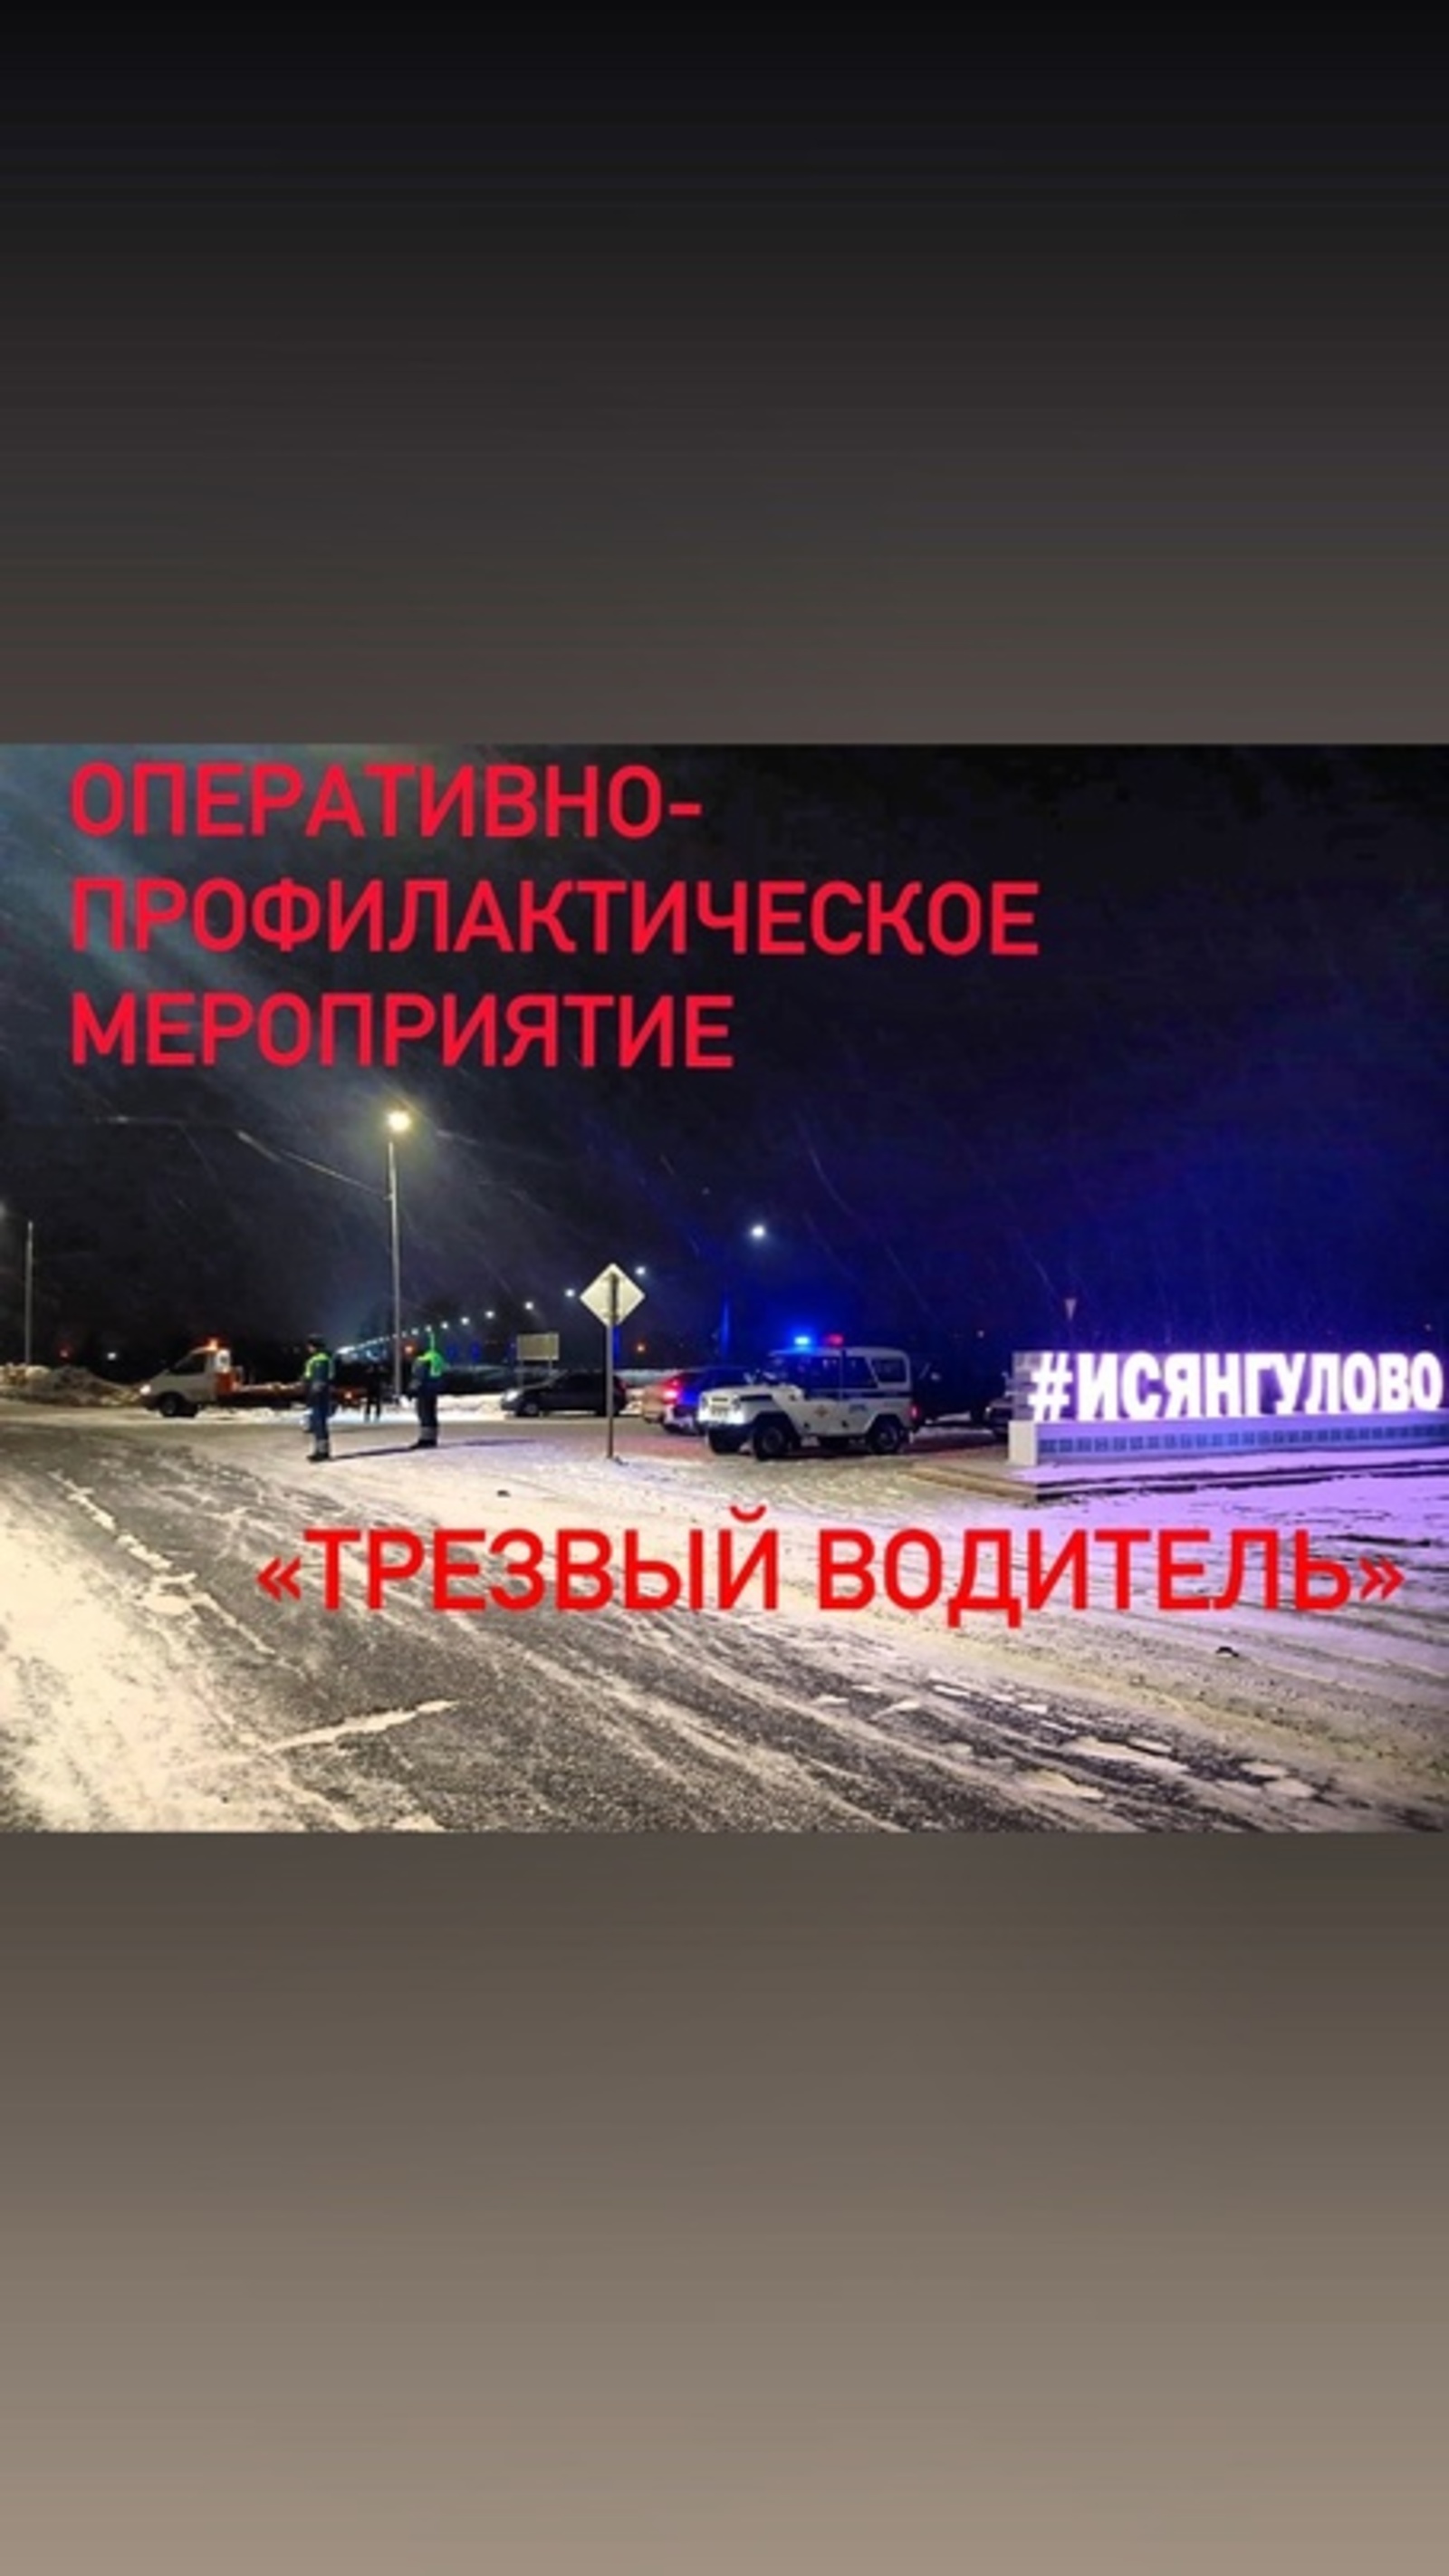 На территории республики Башкортостана  проходит оперативно-профилактическое мероприятие «Трезвый водитель»